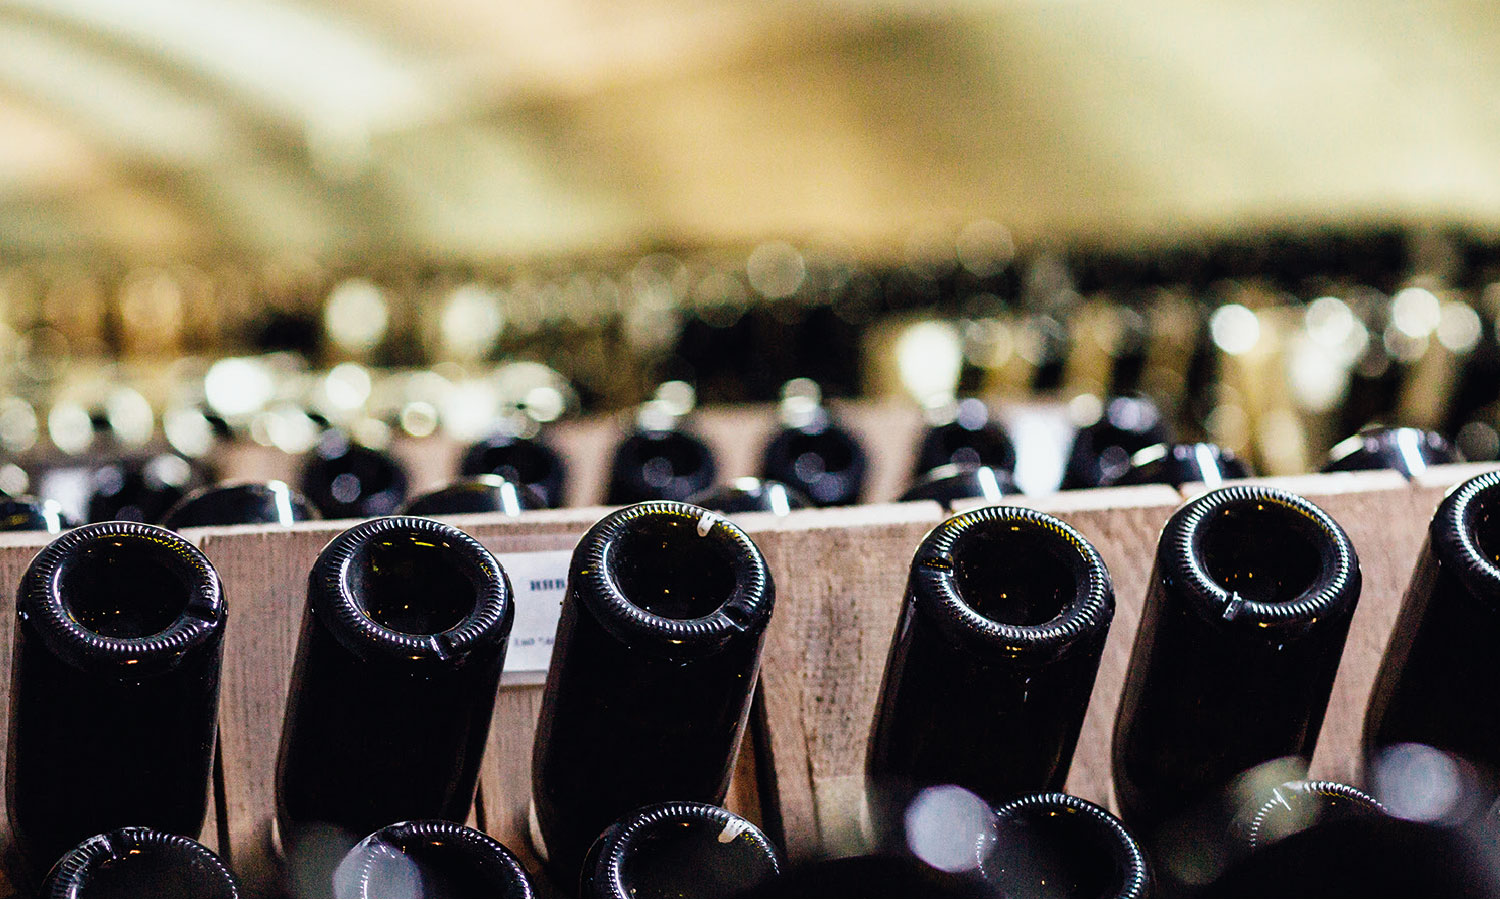 Bottiglie di vino - immagine per l'articolo Il vino che sarà - Vinaria